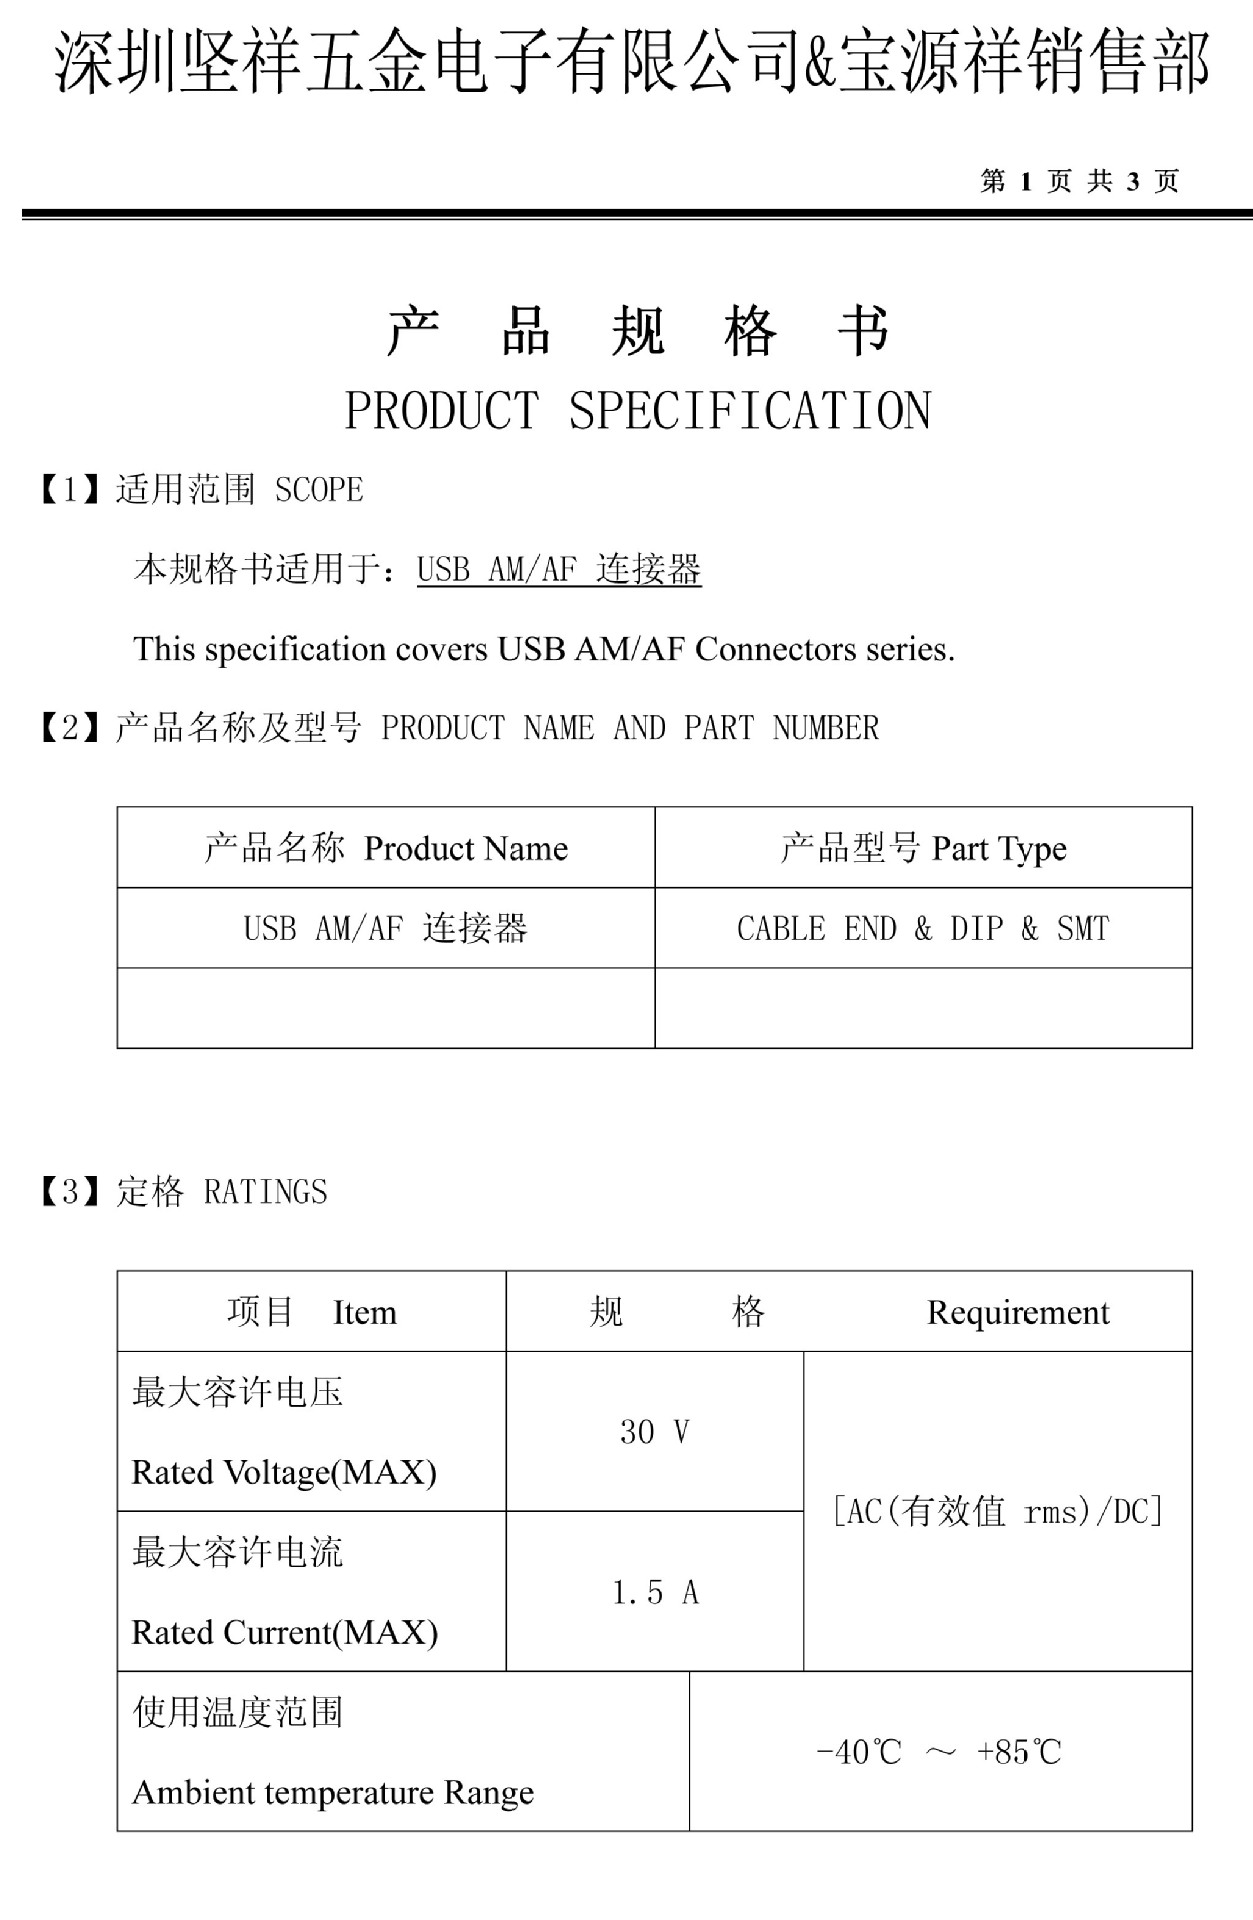 USB AM & AF 規格書-1